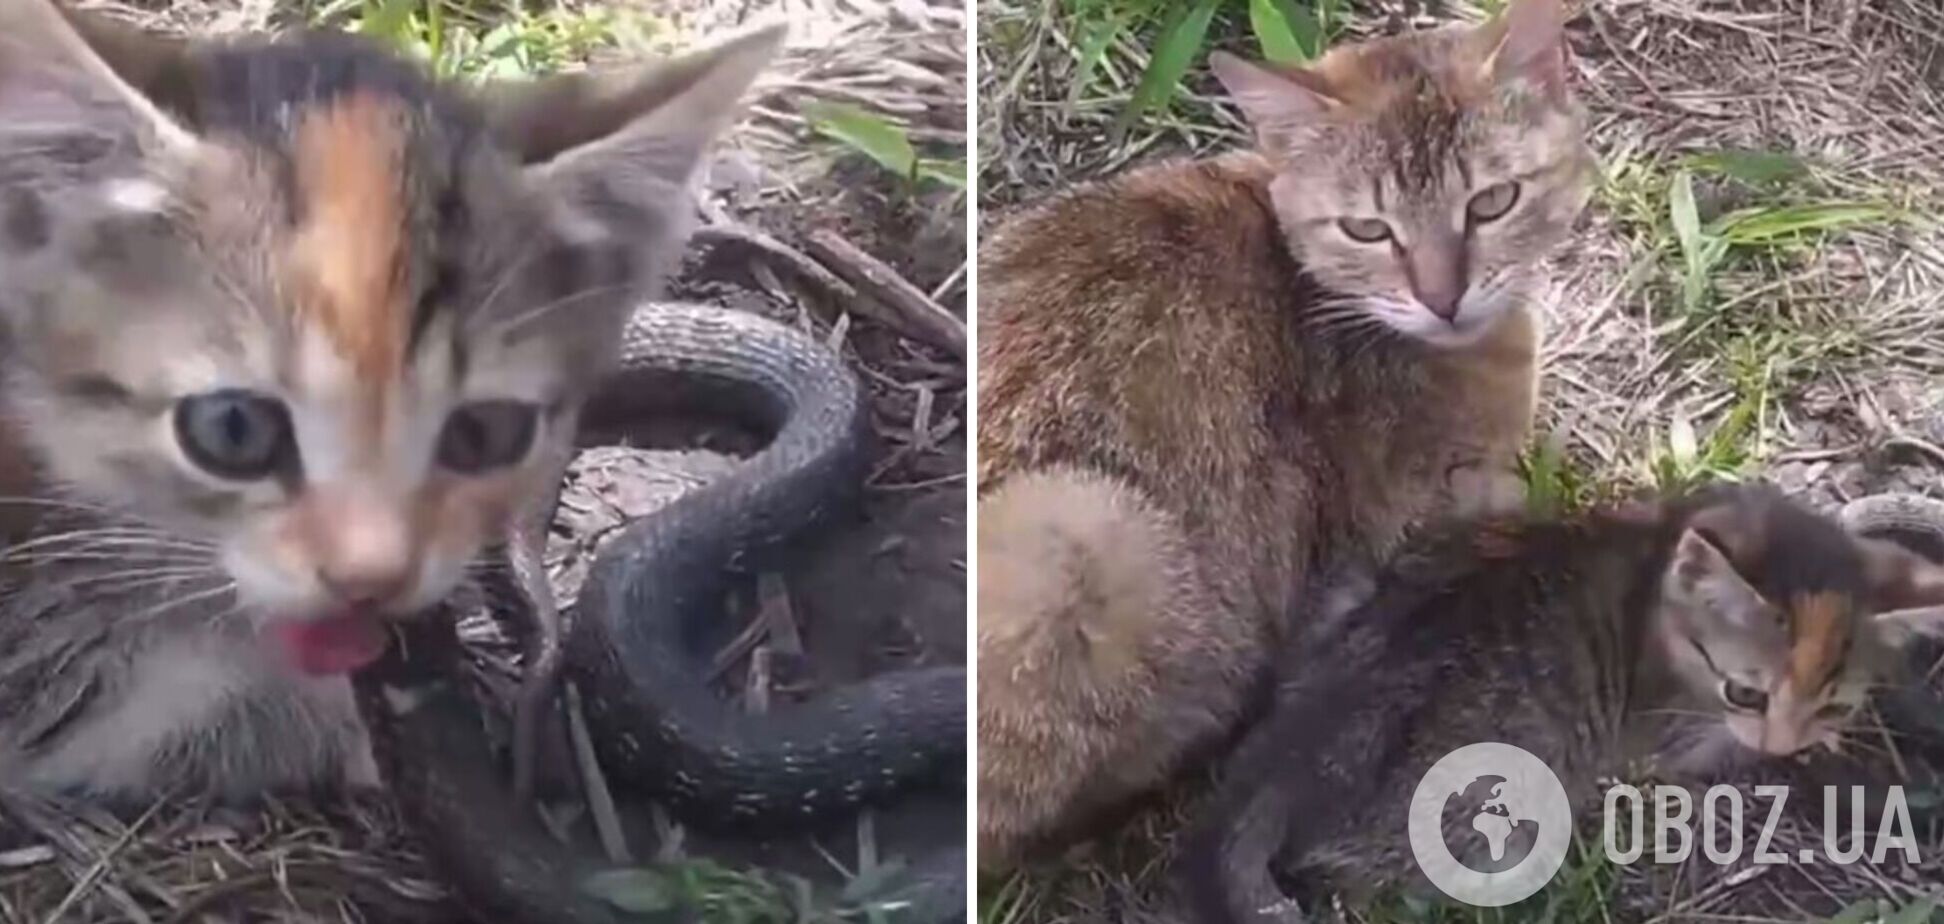 На Хмельниччині кішка вполювала змію, більшу за себе. Відео